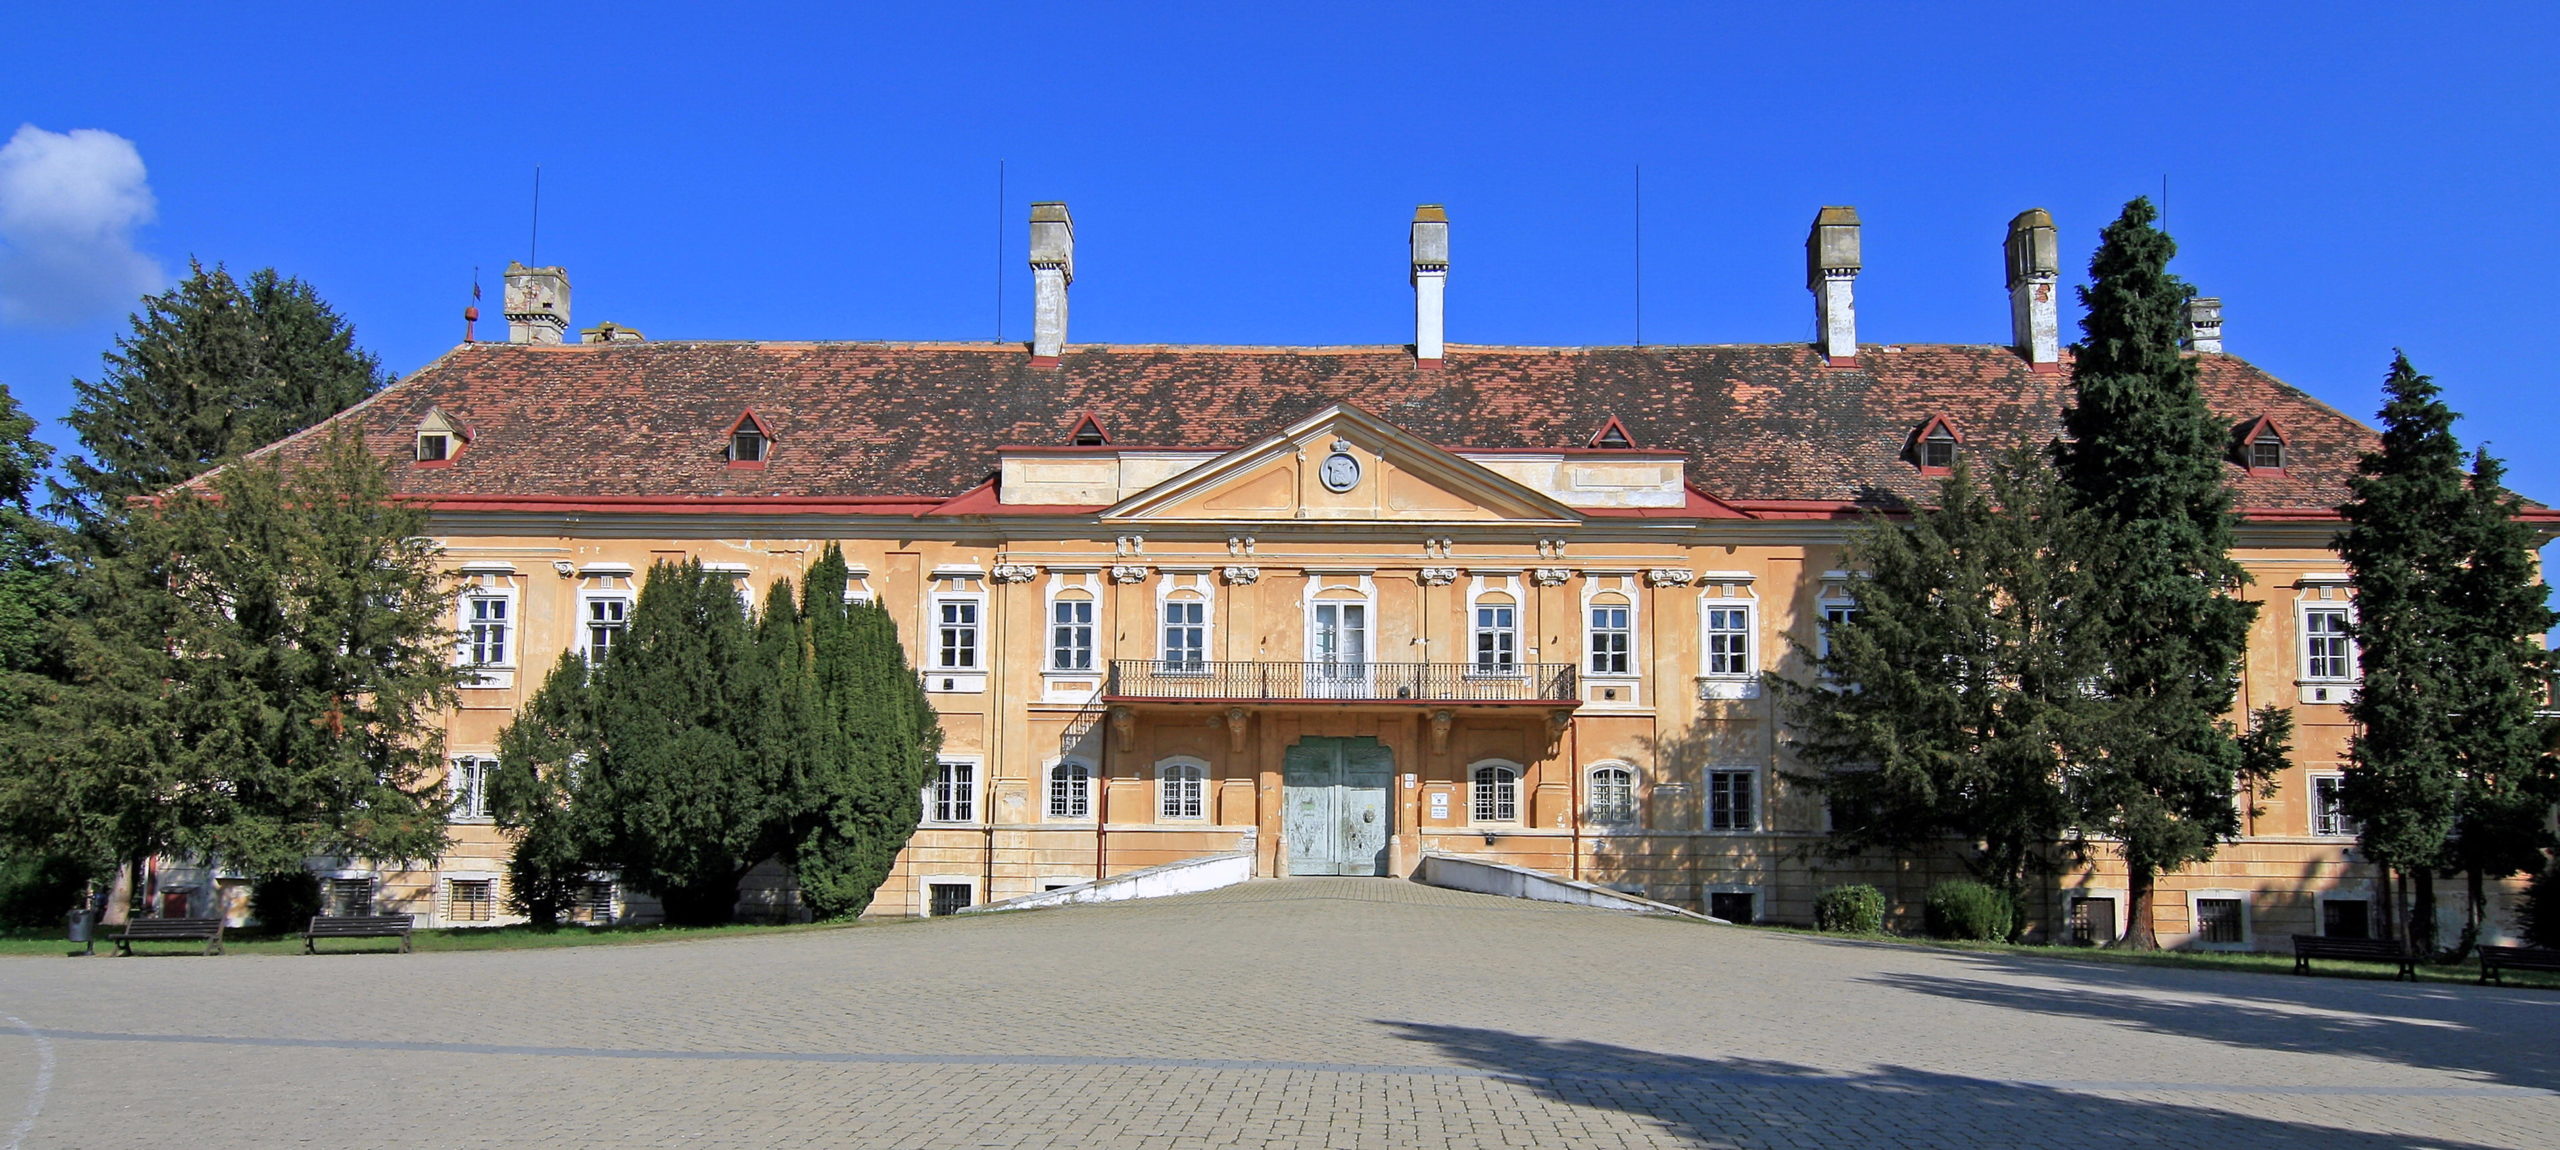 Pararrayos DAT CONTROLER® REMOTE protegen el castillo de Malacky en Eslovaquia